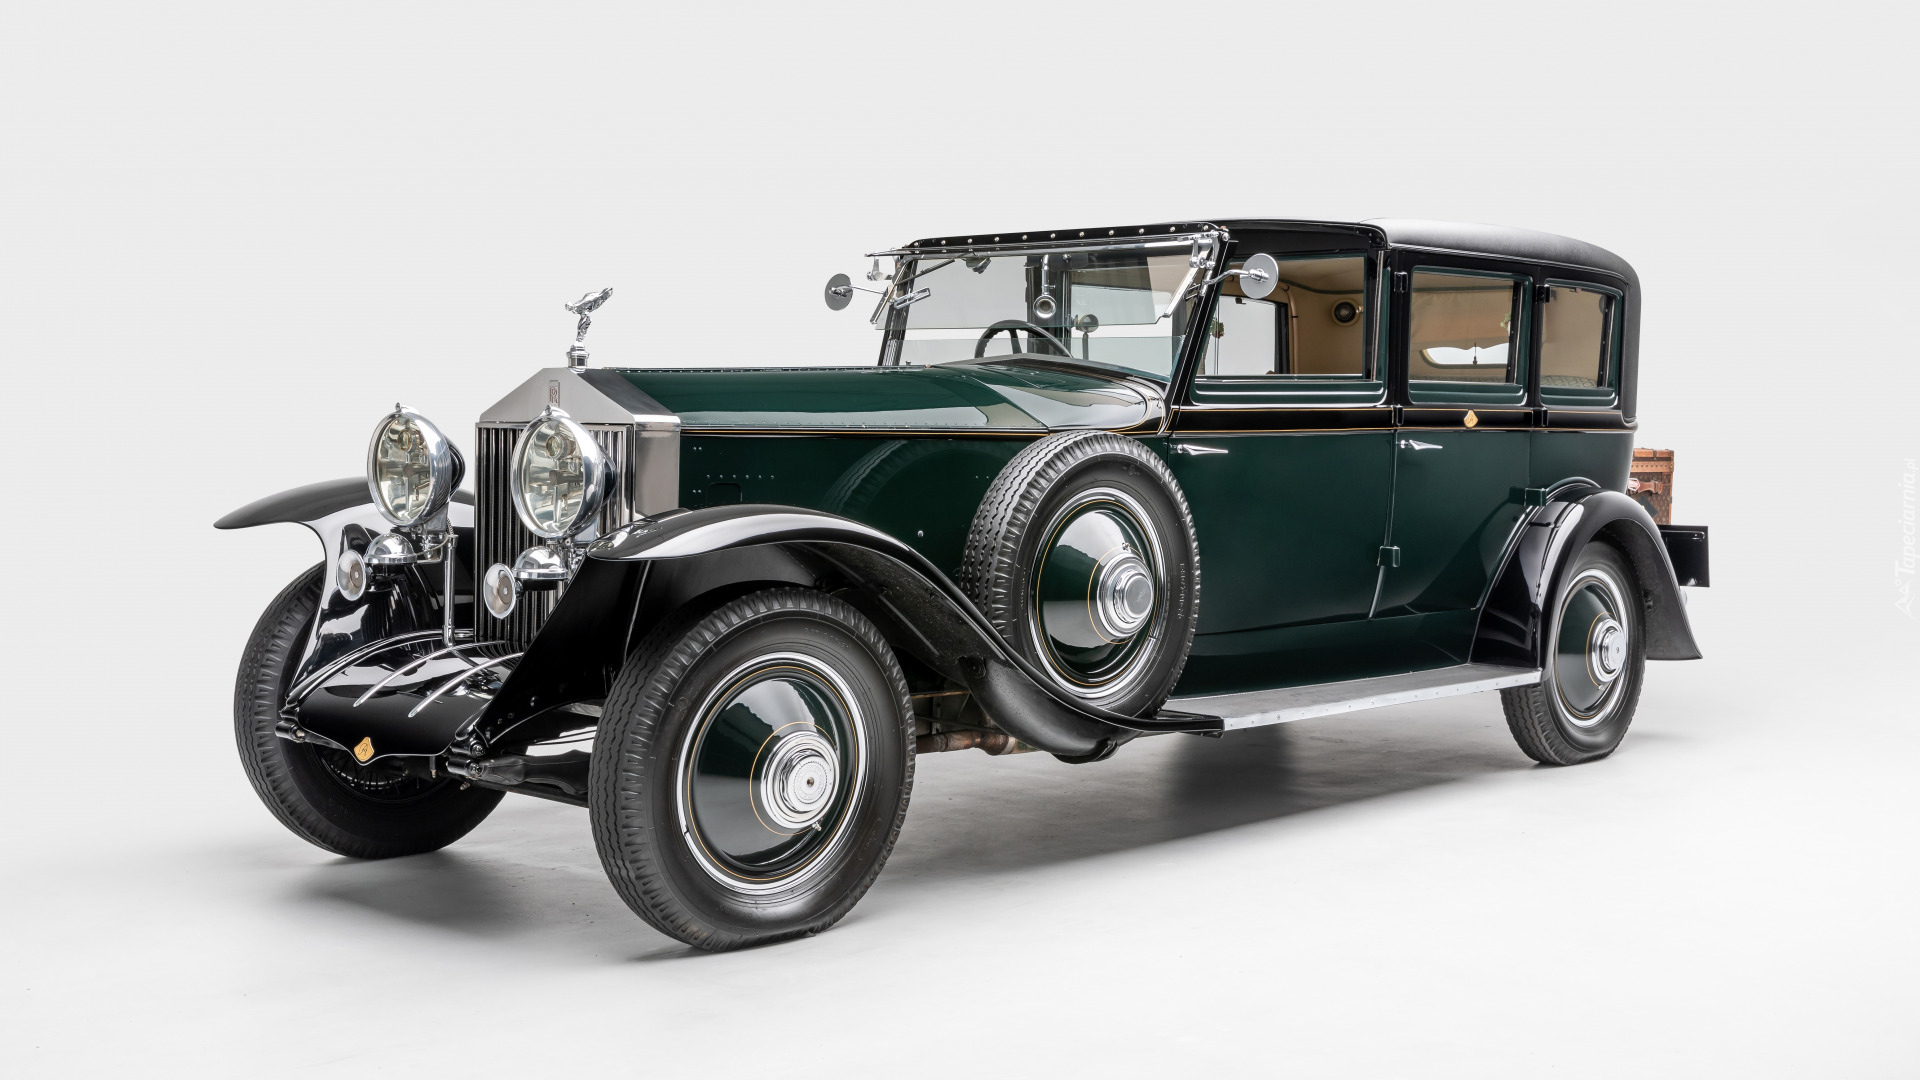 Zabytkowy, Rolls-Royce Phantom I, 1927 Rolls-Royce Phantom